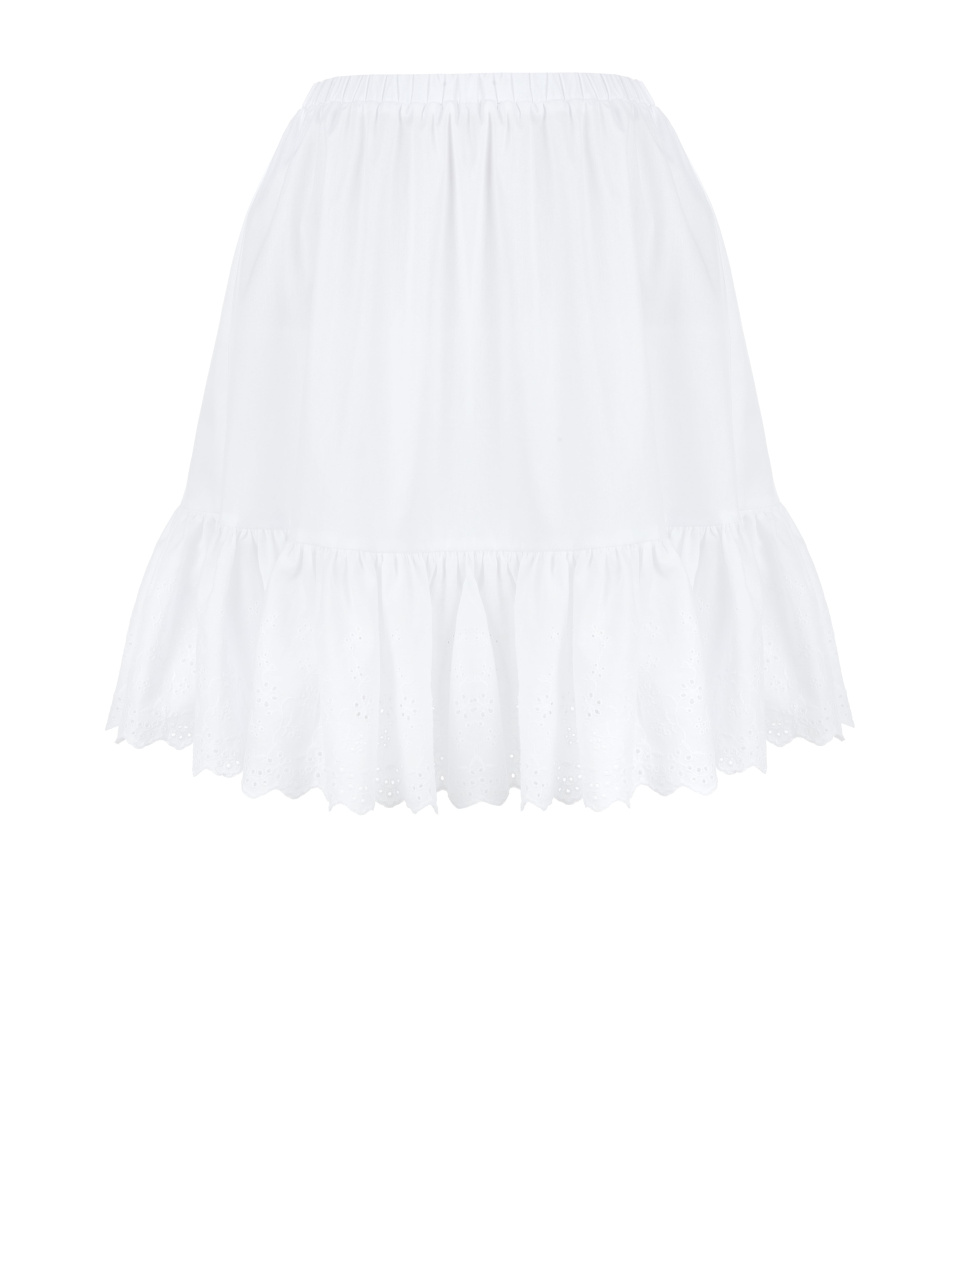 Белая хлопковая юбка-мини с воланом, 1